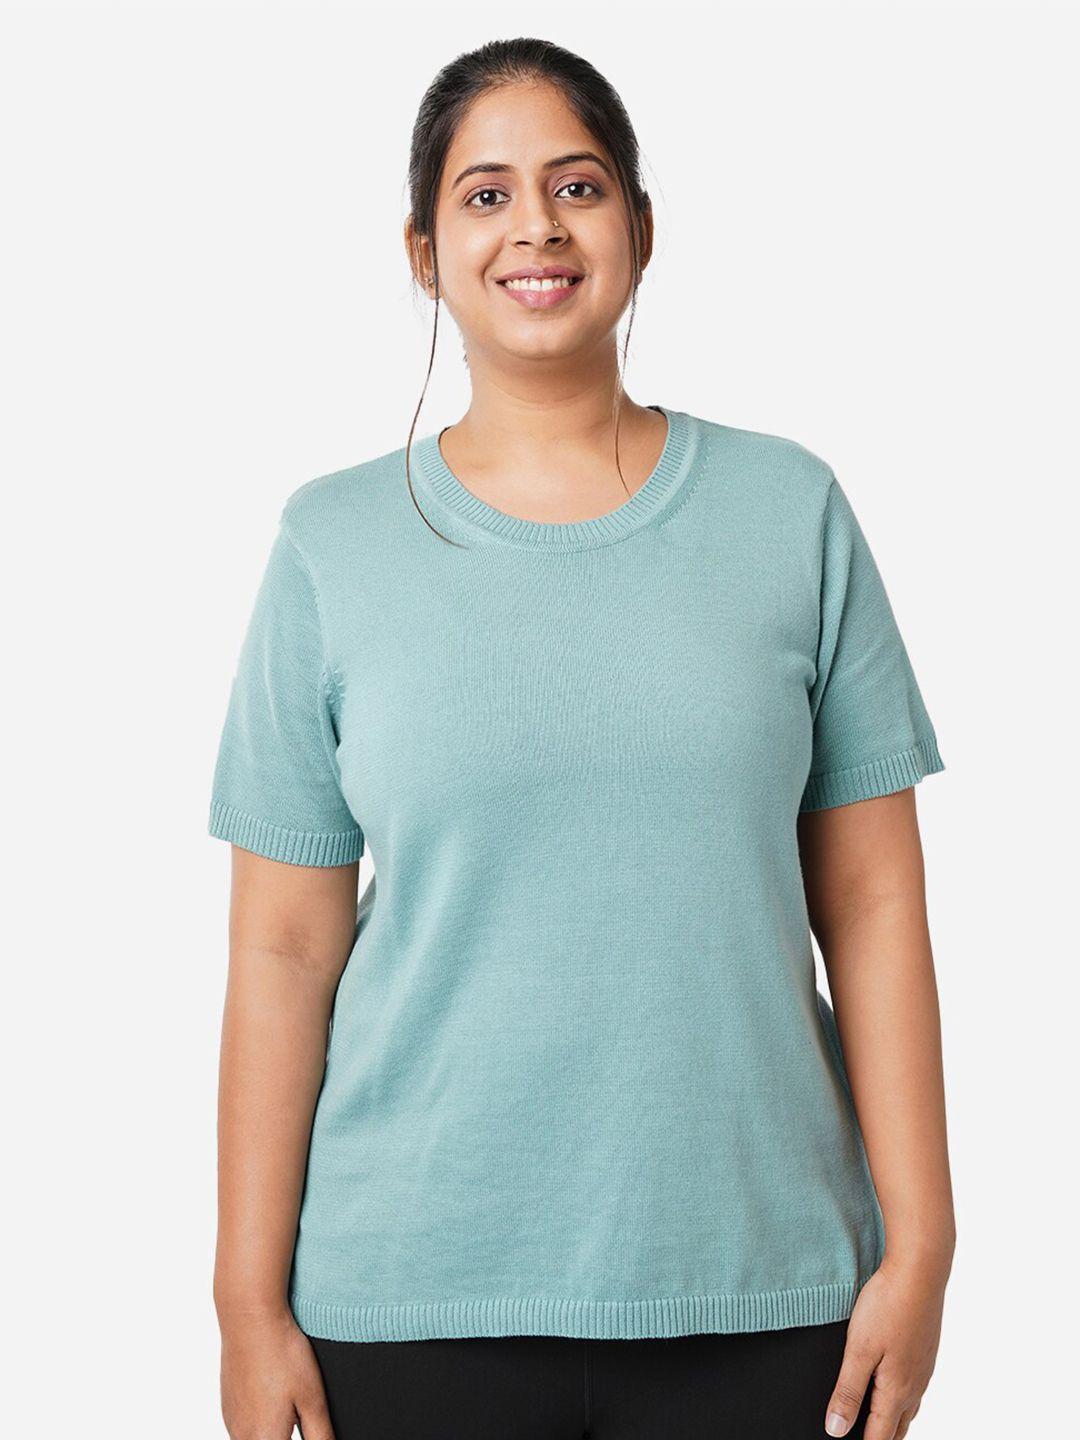 blissclub-women-free-flyknit-t-shirt